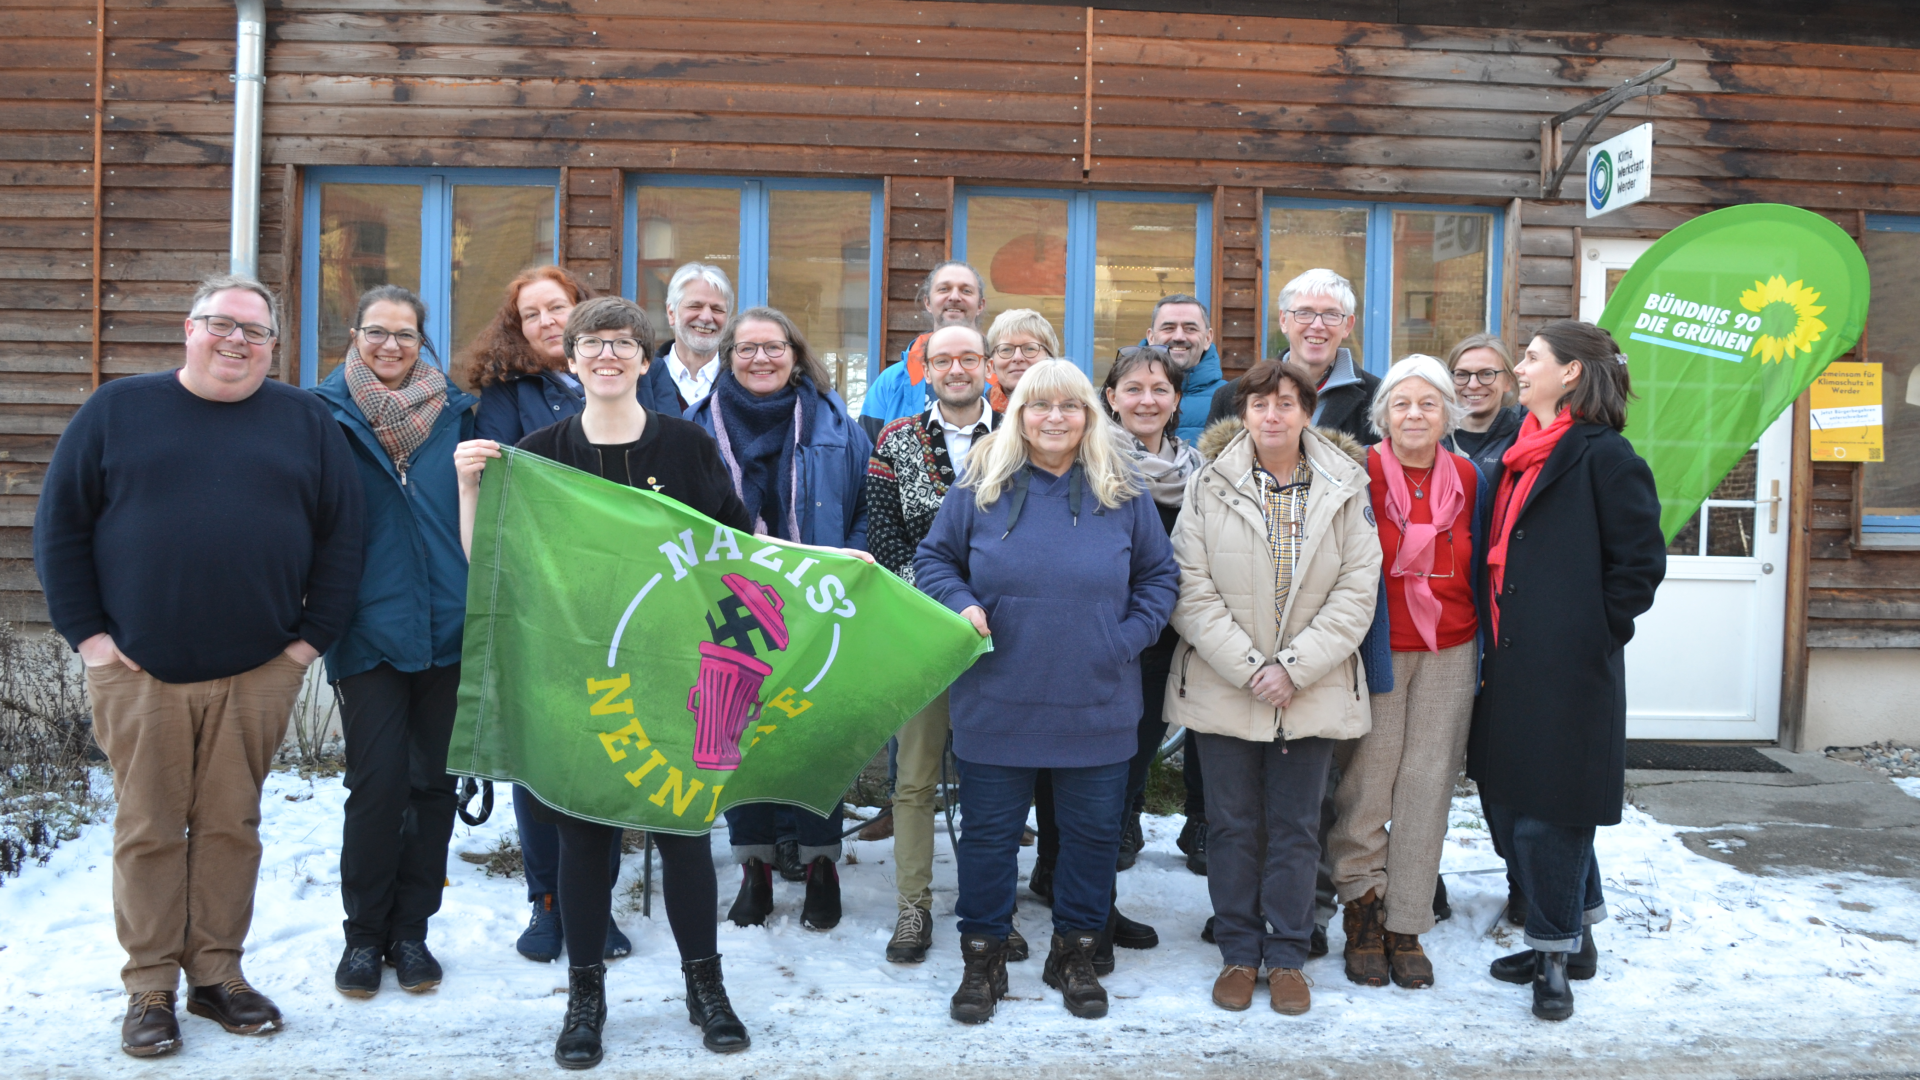 Auf dem Bild sind Teilnehmer:innen der Aufstellungsversammlung der Grünen Werder zu sehen. Insgesamt 17 Personen stehen vor der Klimawerkstatt Werder. Vorne auf dem Bild hält eine Frau ein Banner mit der Aufschrift "Nazis? - Nein danke!"